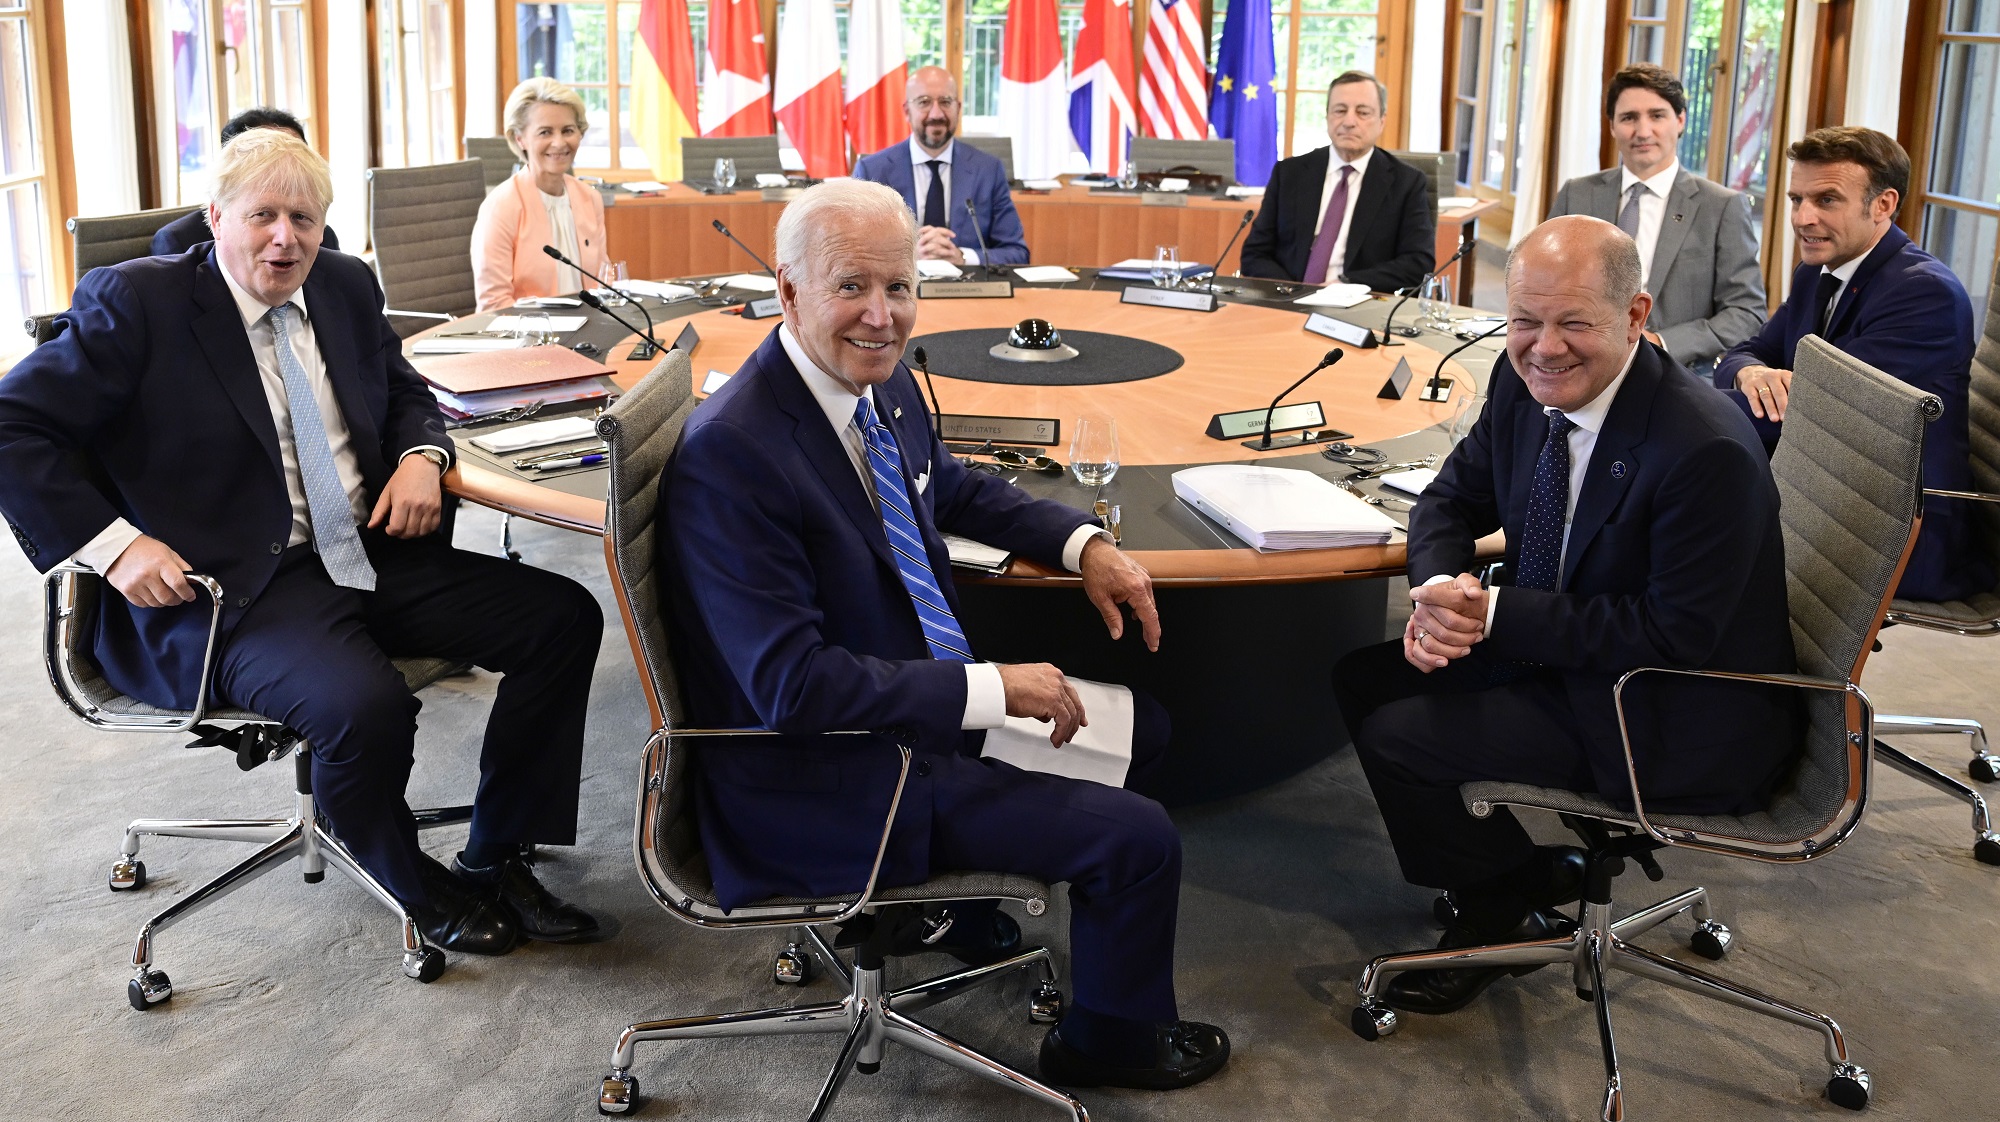 Ρελάνς Πούτιν στις «μπηχτές» των ηγετών της G7 για “γυμνόστηθη” φωτό-“Θα ήταν αηδιαστικό”